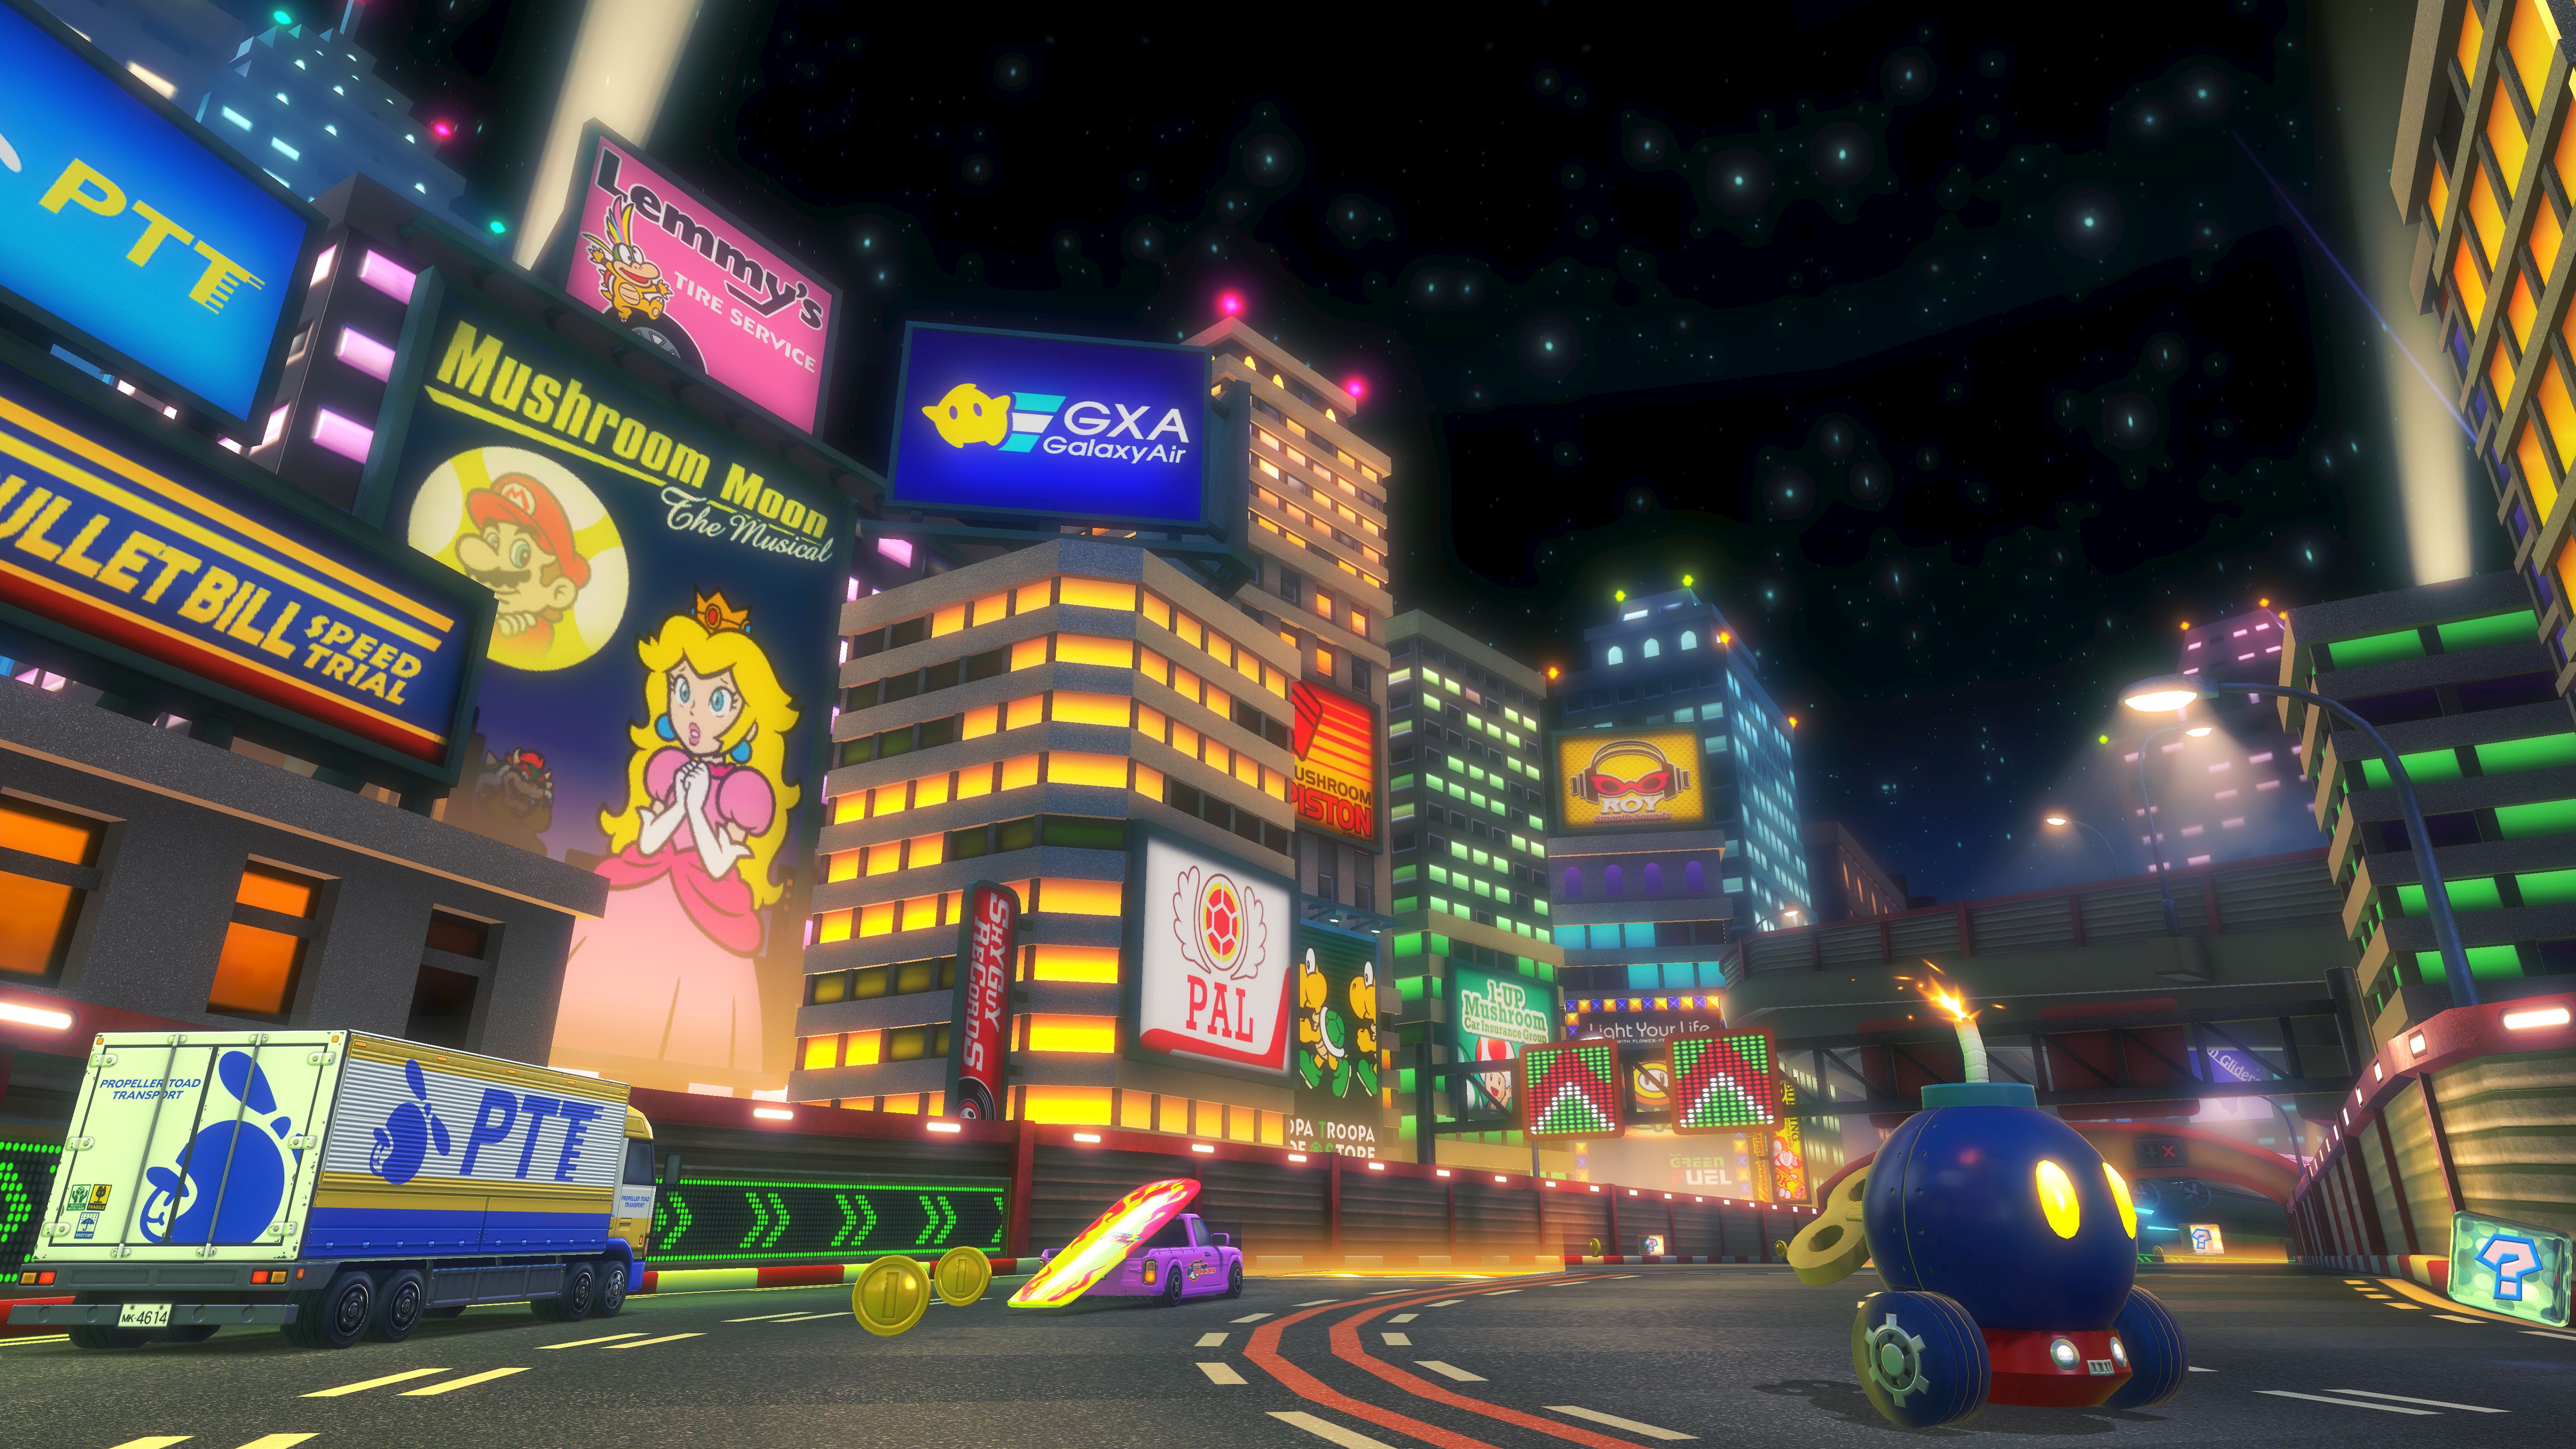 Wii Moonview Highway in Mario Kart 8 Deluxe